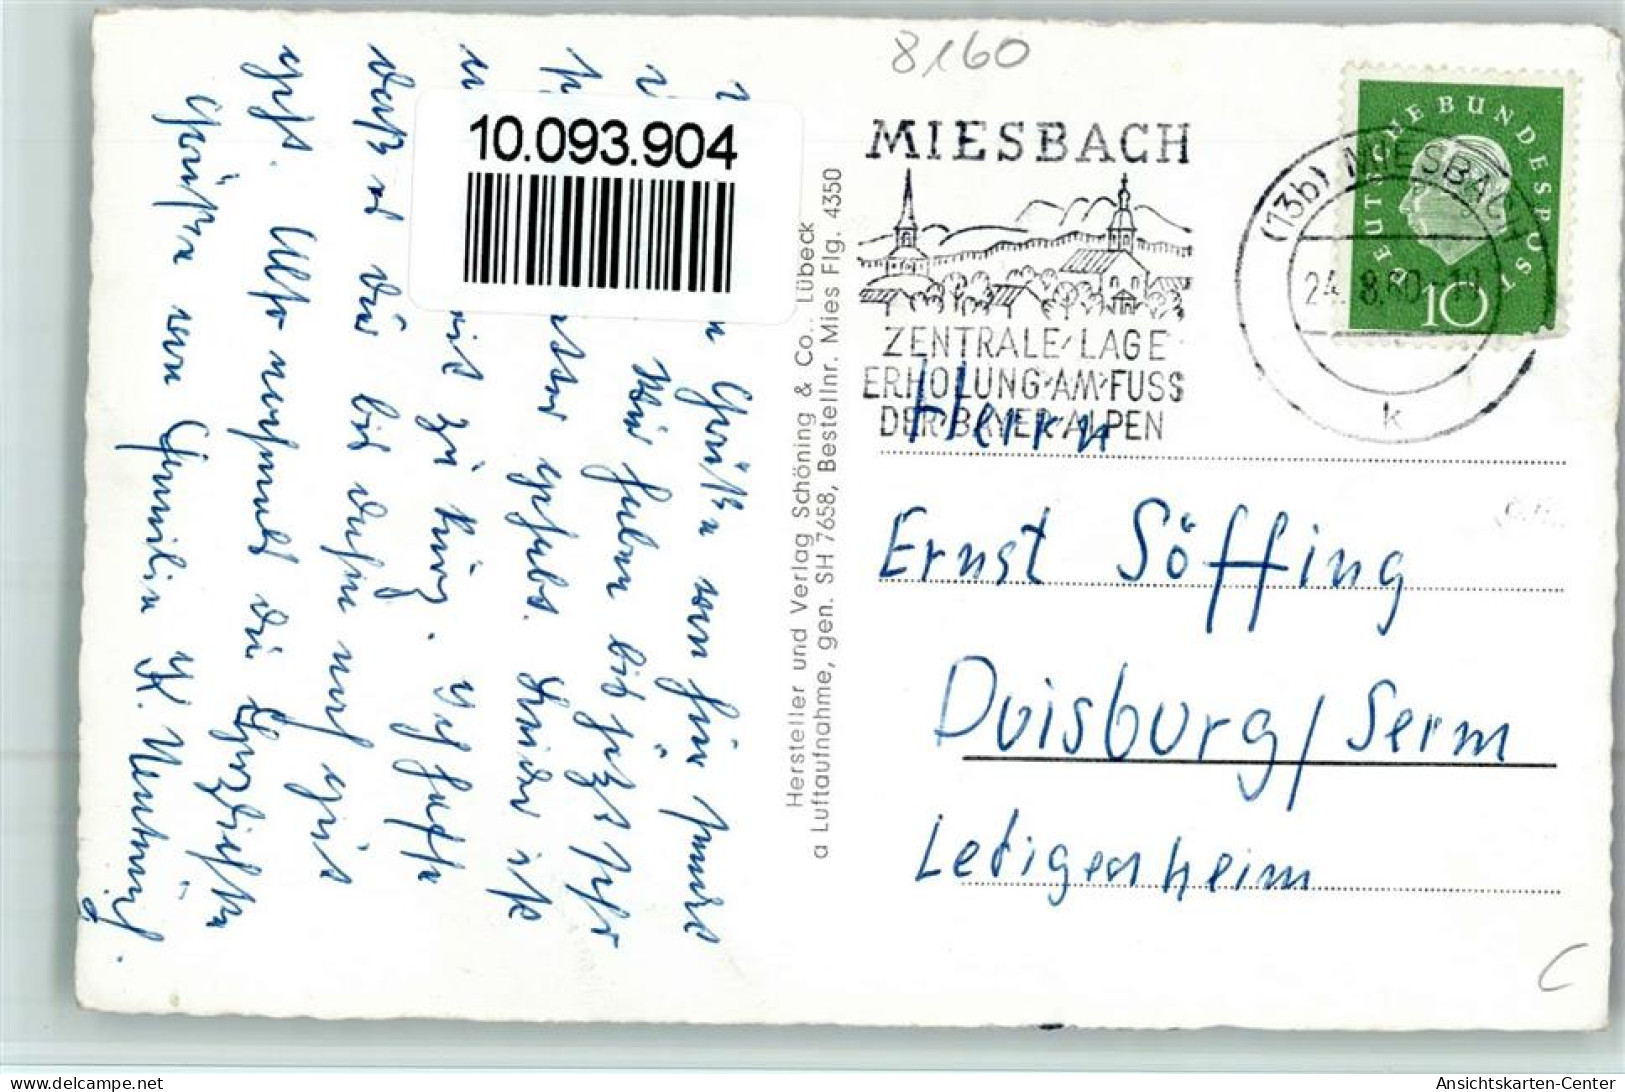 10093904 - Miesbach - Miesbach